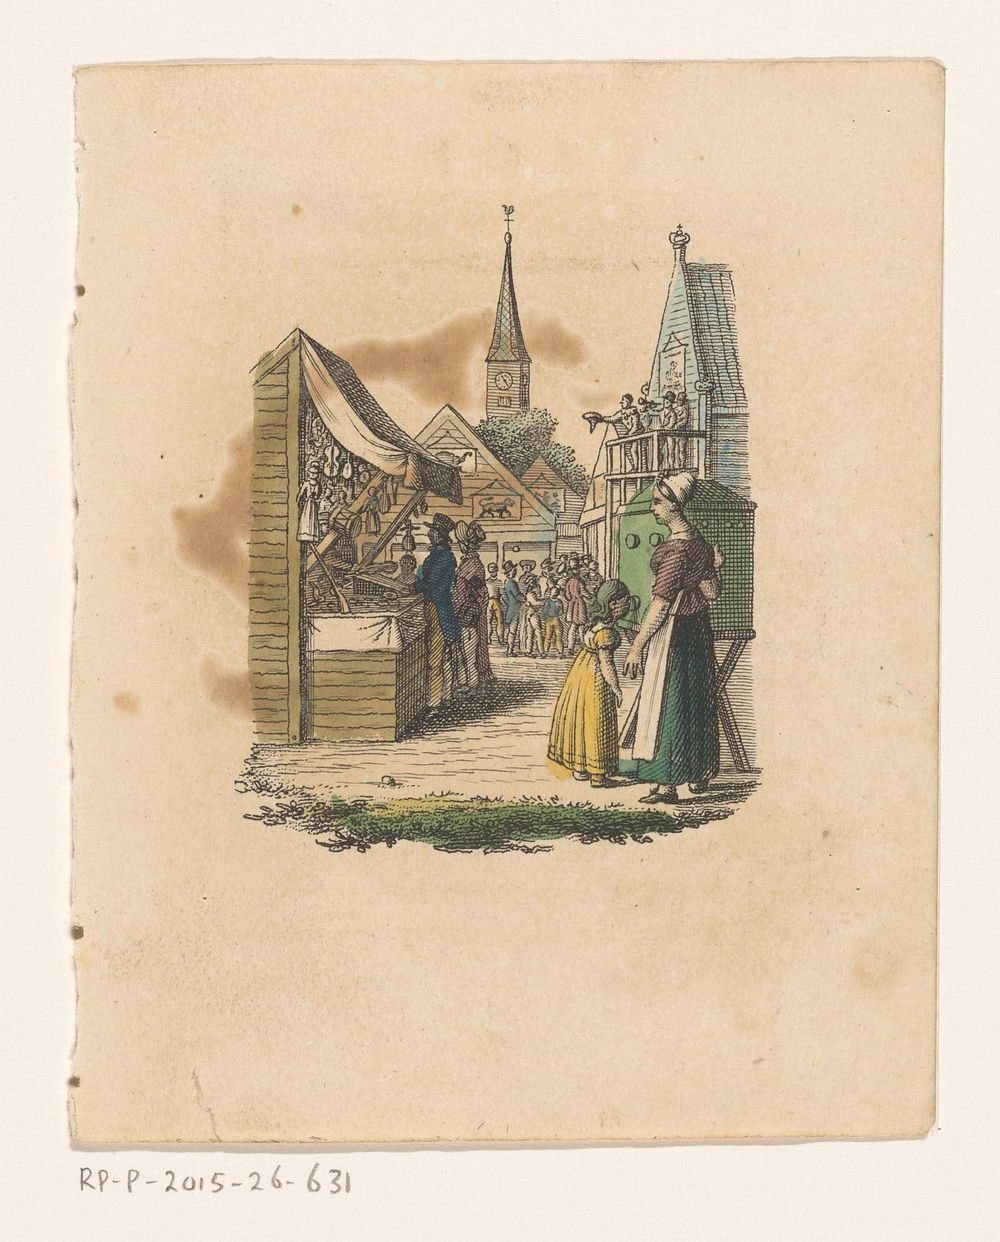 Kijkkast op een kermis (c. 1800 - c. 1899) by anonymous